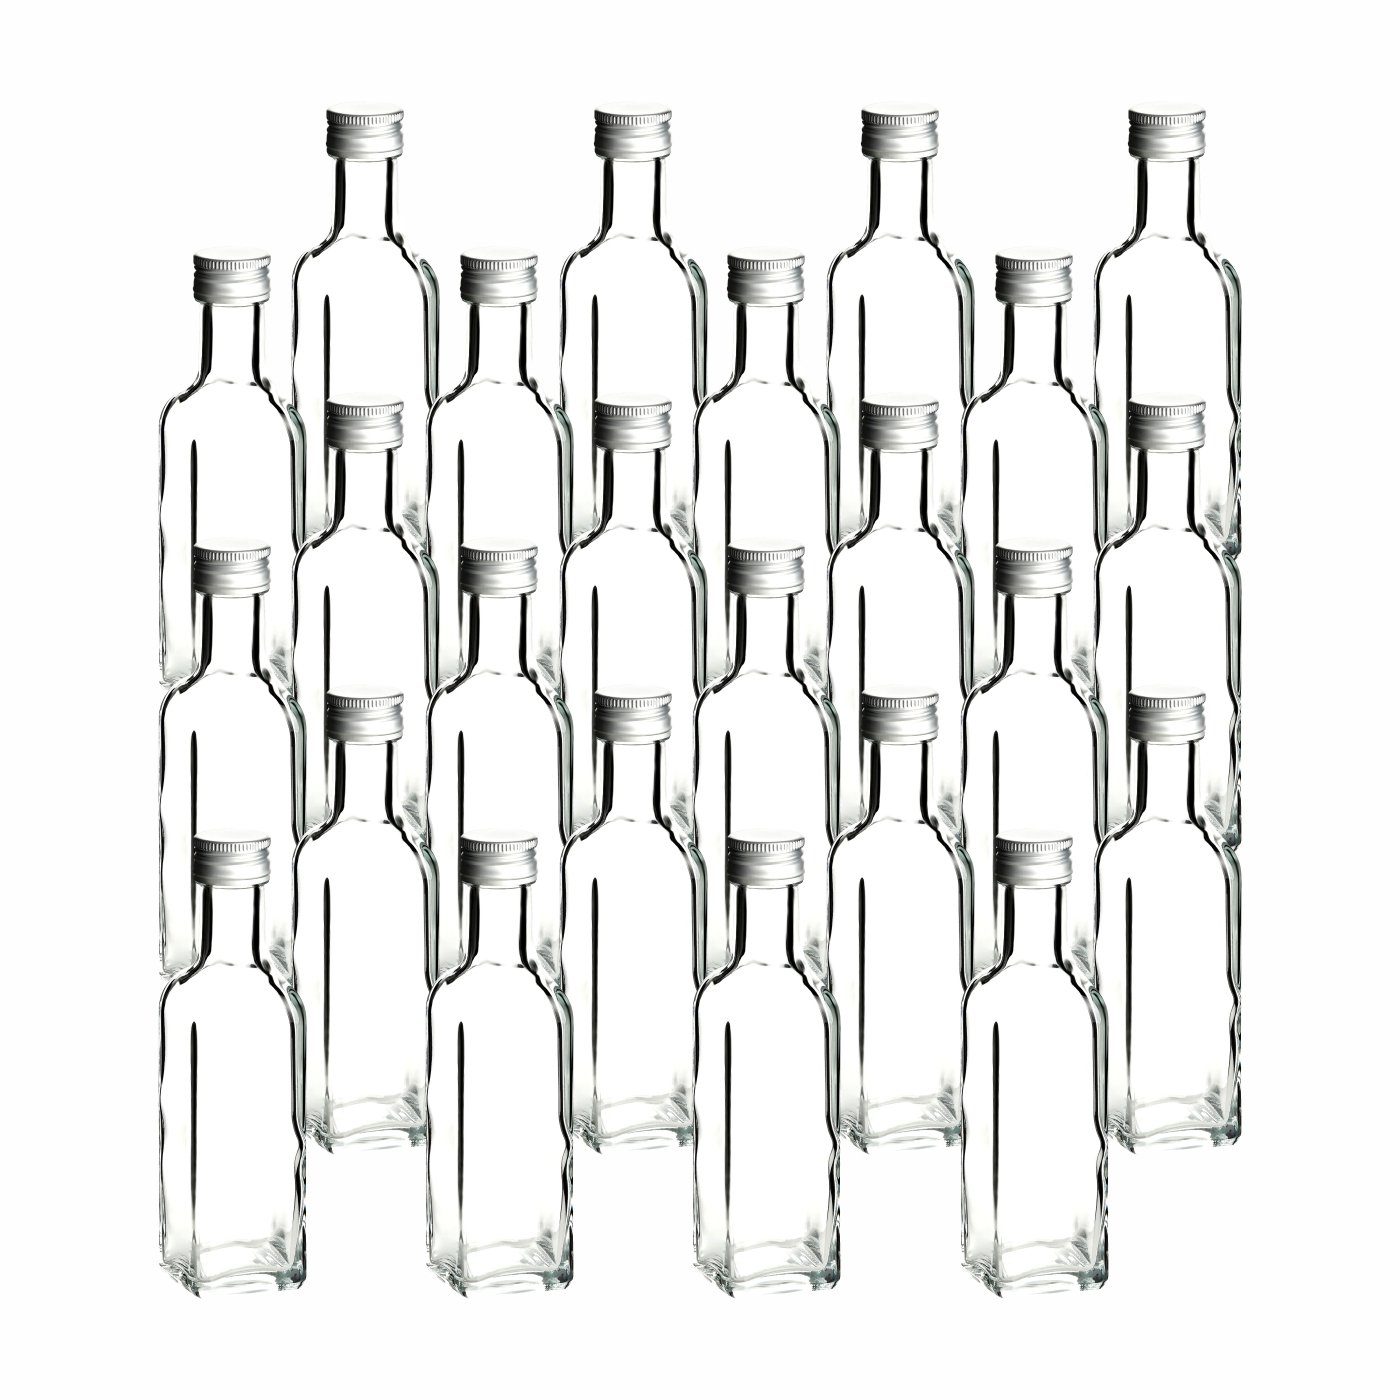 gouveo Trinkflasche Glasflaschen 100 ml Maraska mit Schraub-Deckel - Kleine Flasche 0,1l, 24er Set, transparent-silberfarben transparent - silberfarben